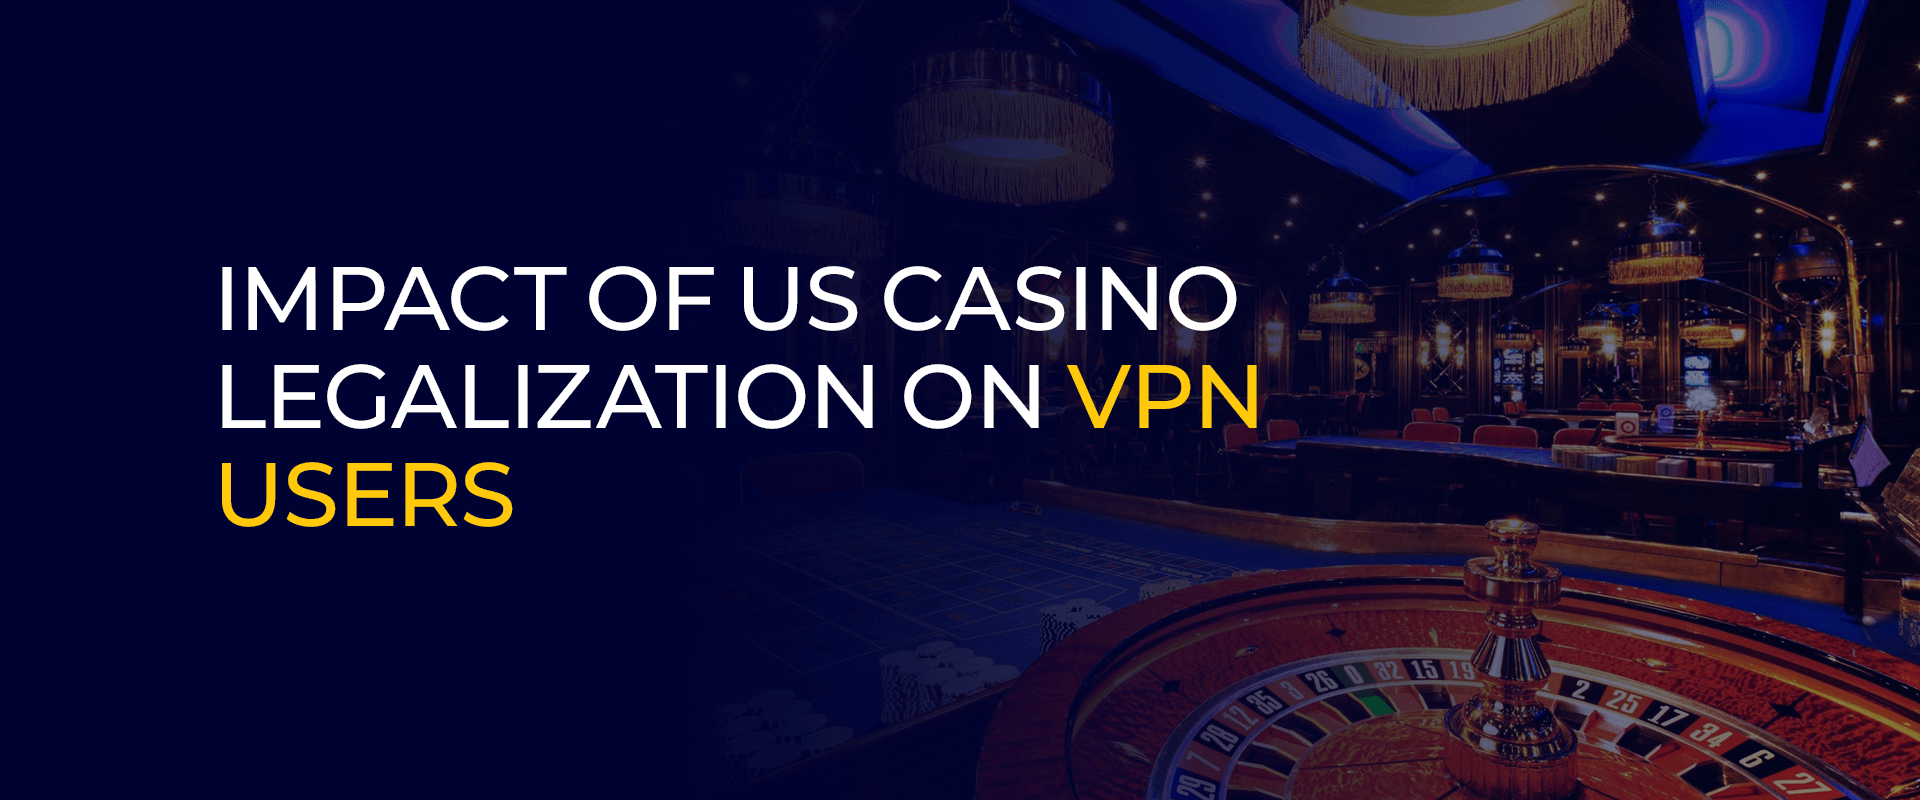 Impact de la légalisation des casinos américains sur les utilisateurs de VPN